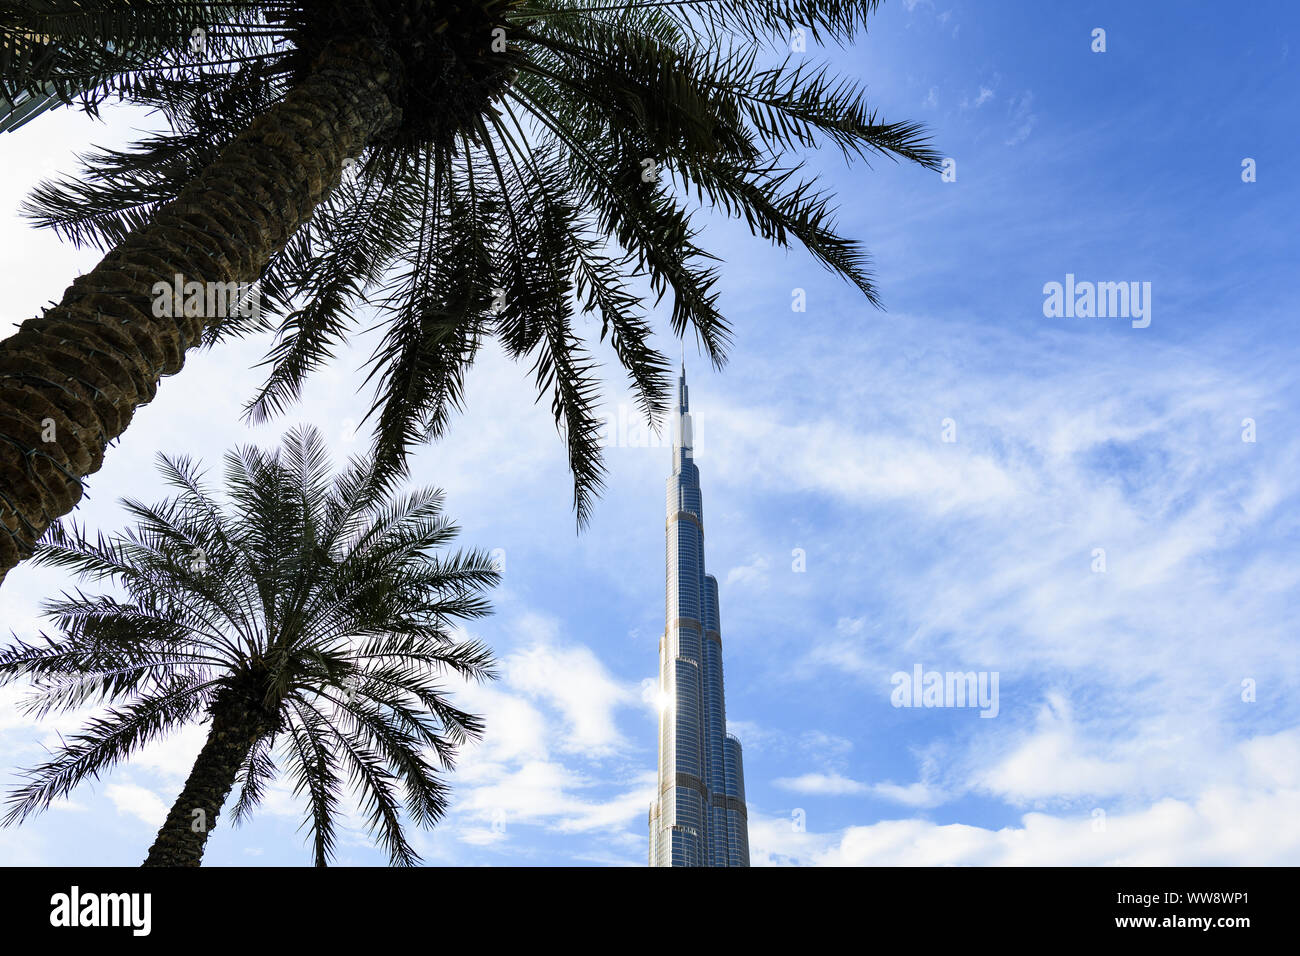 Vista del magnifico Burj Khalifa incorniciata da alcuni alberi di palma in primo piano. Il Burj Khalifa è il più alto torre nel mondo. Foto Stock